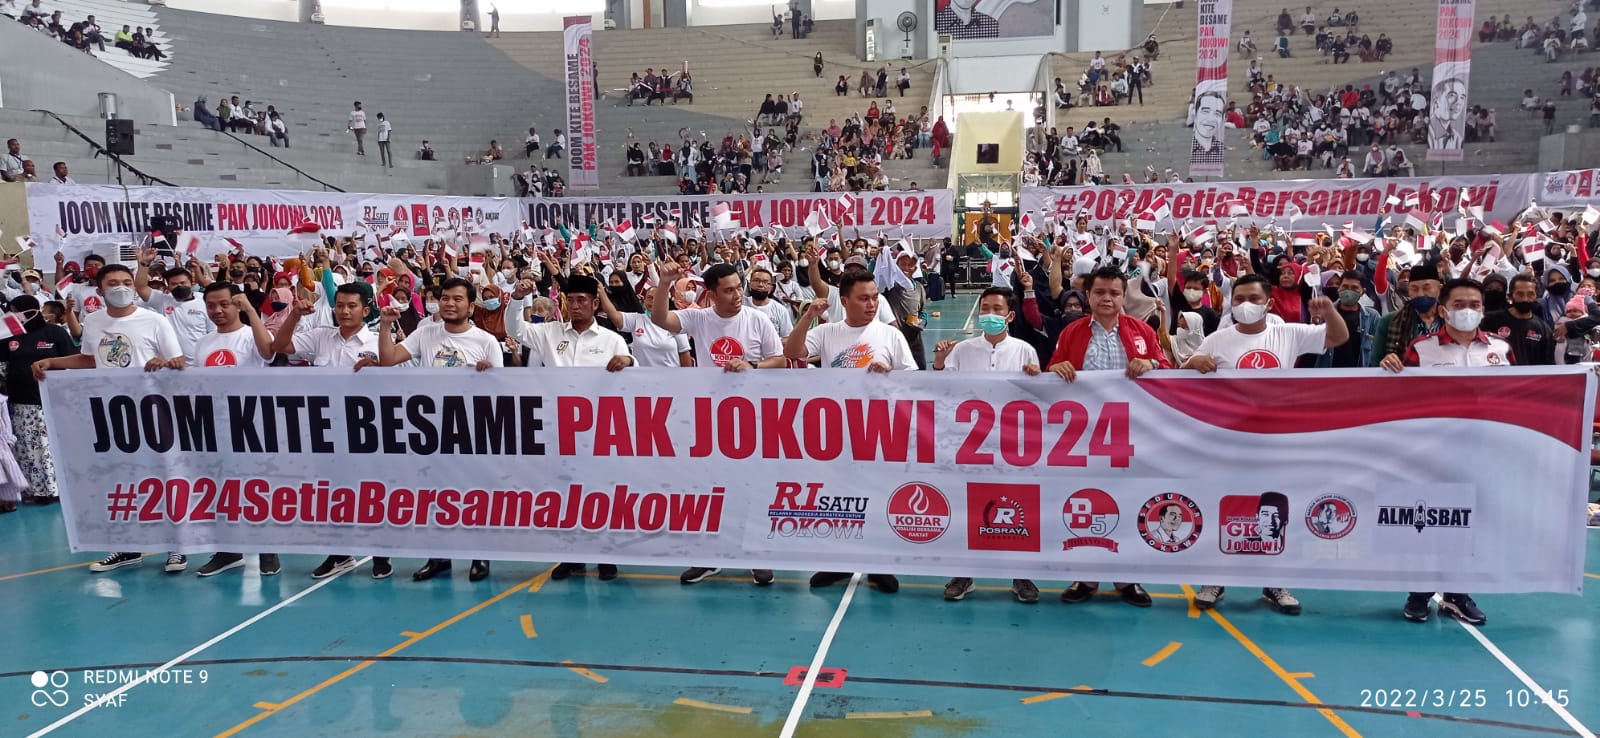 Ribuan Relawan Jokowi di Pekanbaru Berkumpul di GOR Hall Rumah Menyerukan Kesetiannya